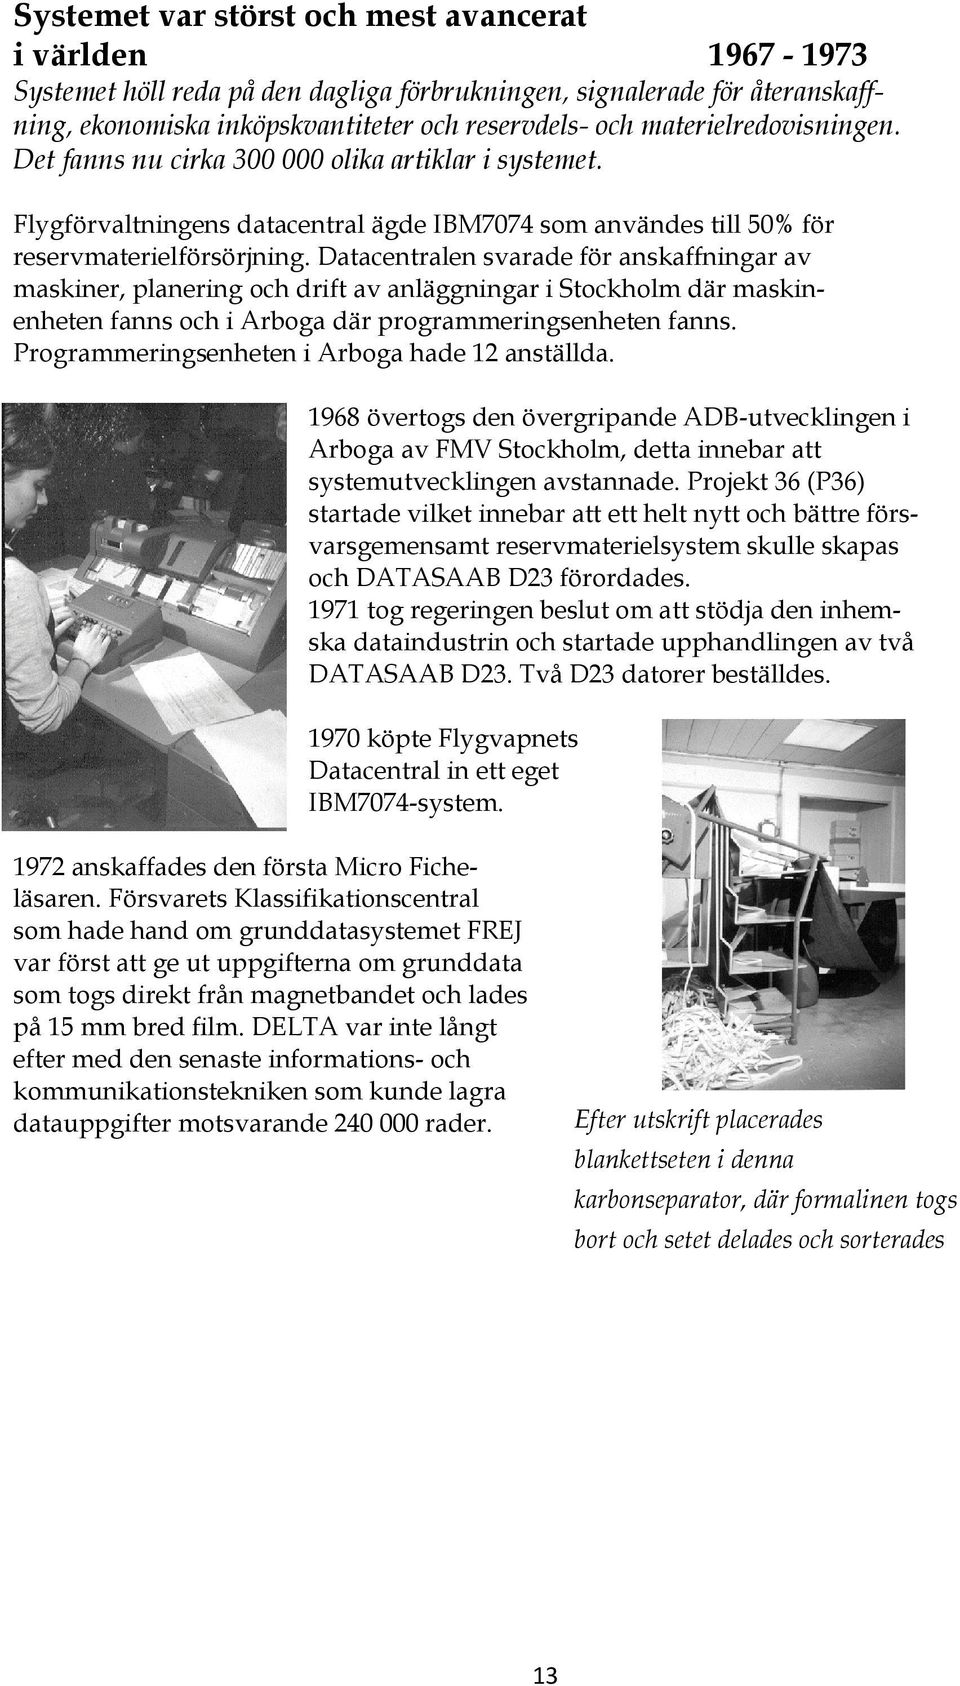 Datacentralen svarade för anskaffningar av maskiner, planering och drift av anläggningar i Stockholm där maskinenheten fanns och i Arboga där programmeringsenheten fanns.